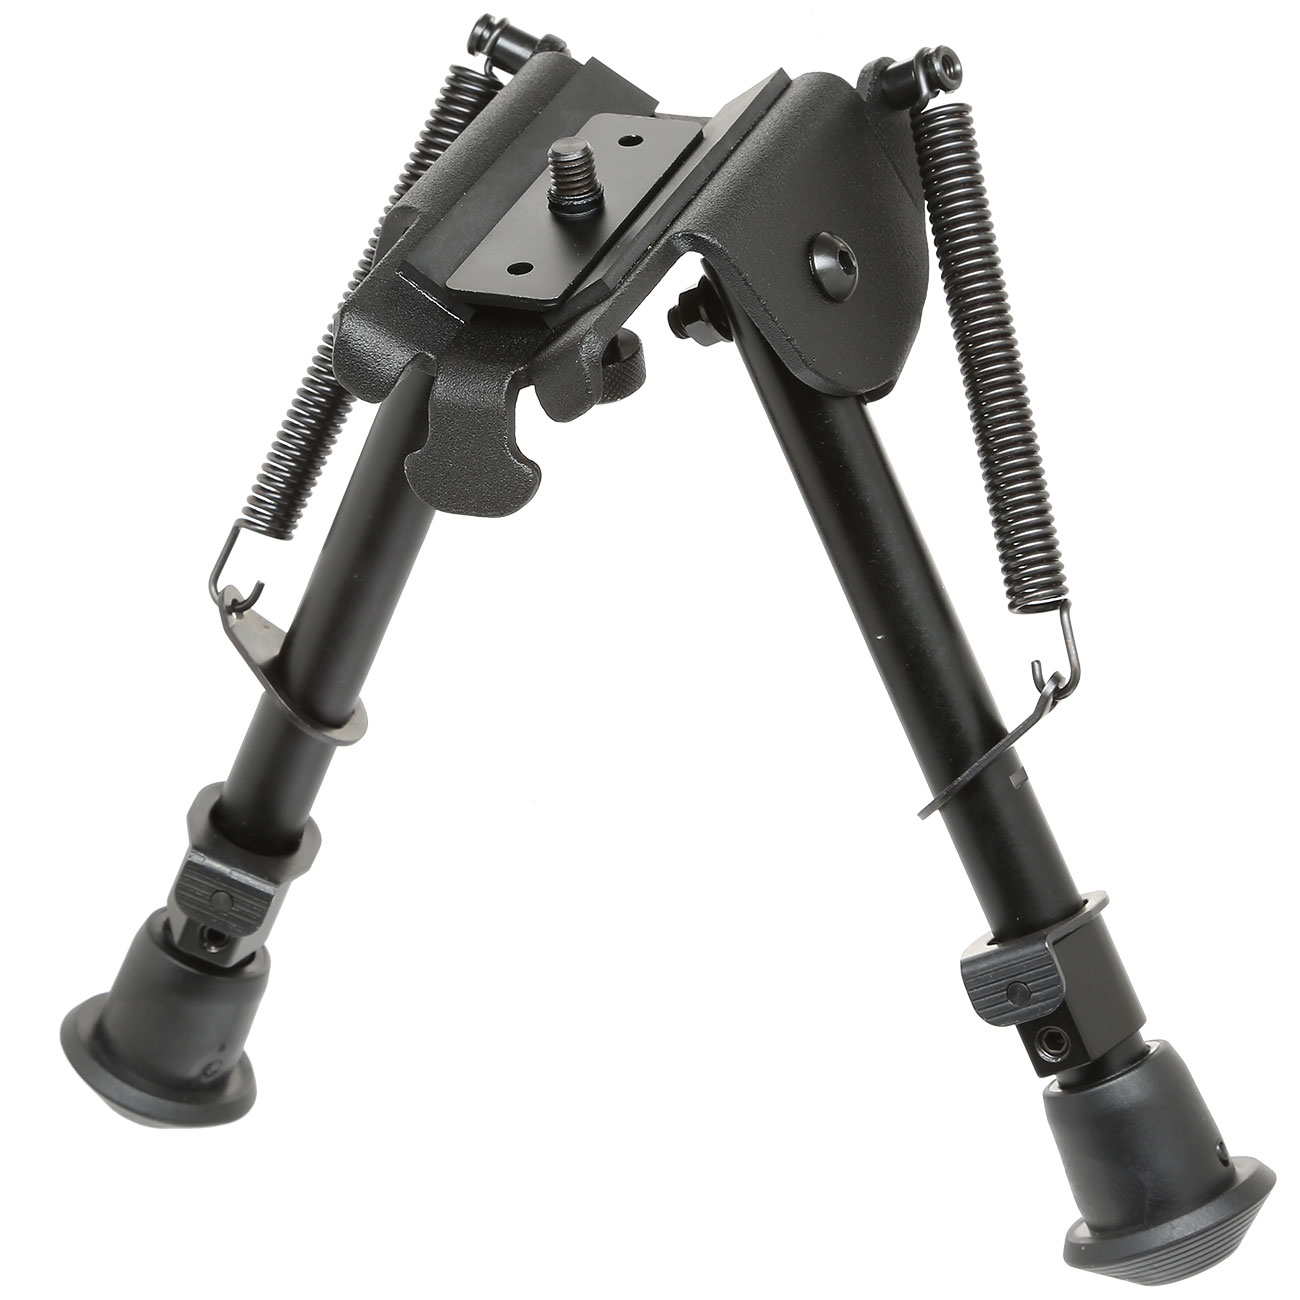 SRC Tactical Zweibein mit 21mm / Sniper / M4 Handguard Halterung - Gummifüße schwarz Bild 1